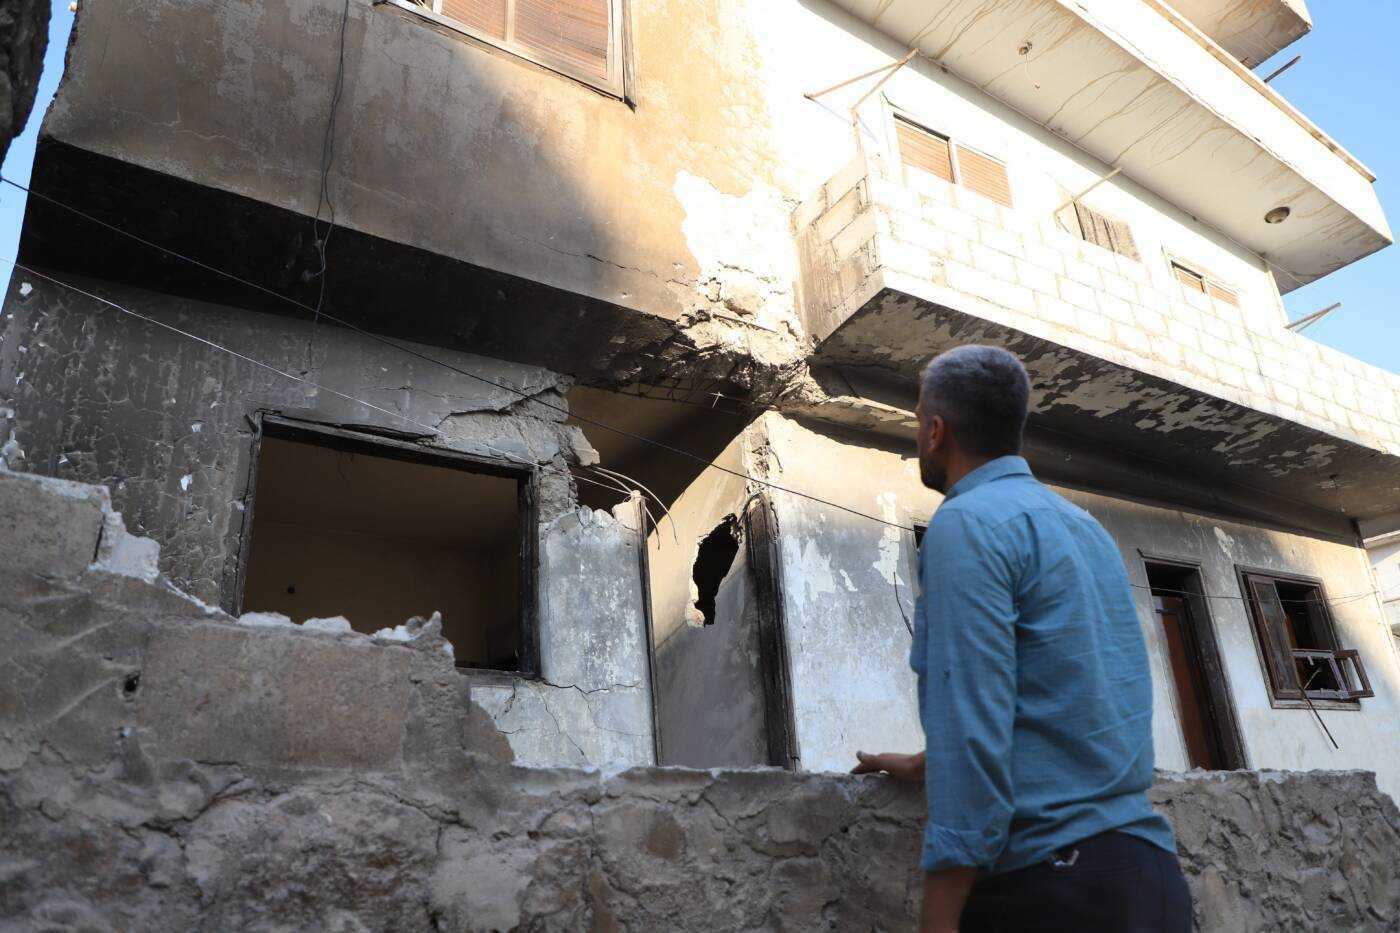 “ندفع ثمن صراعهم”: المدنيون في شمال سوريا تحت قصف دمشق وأنقرة